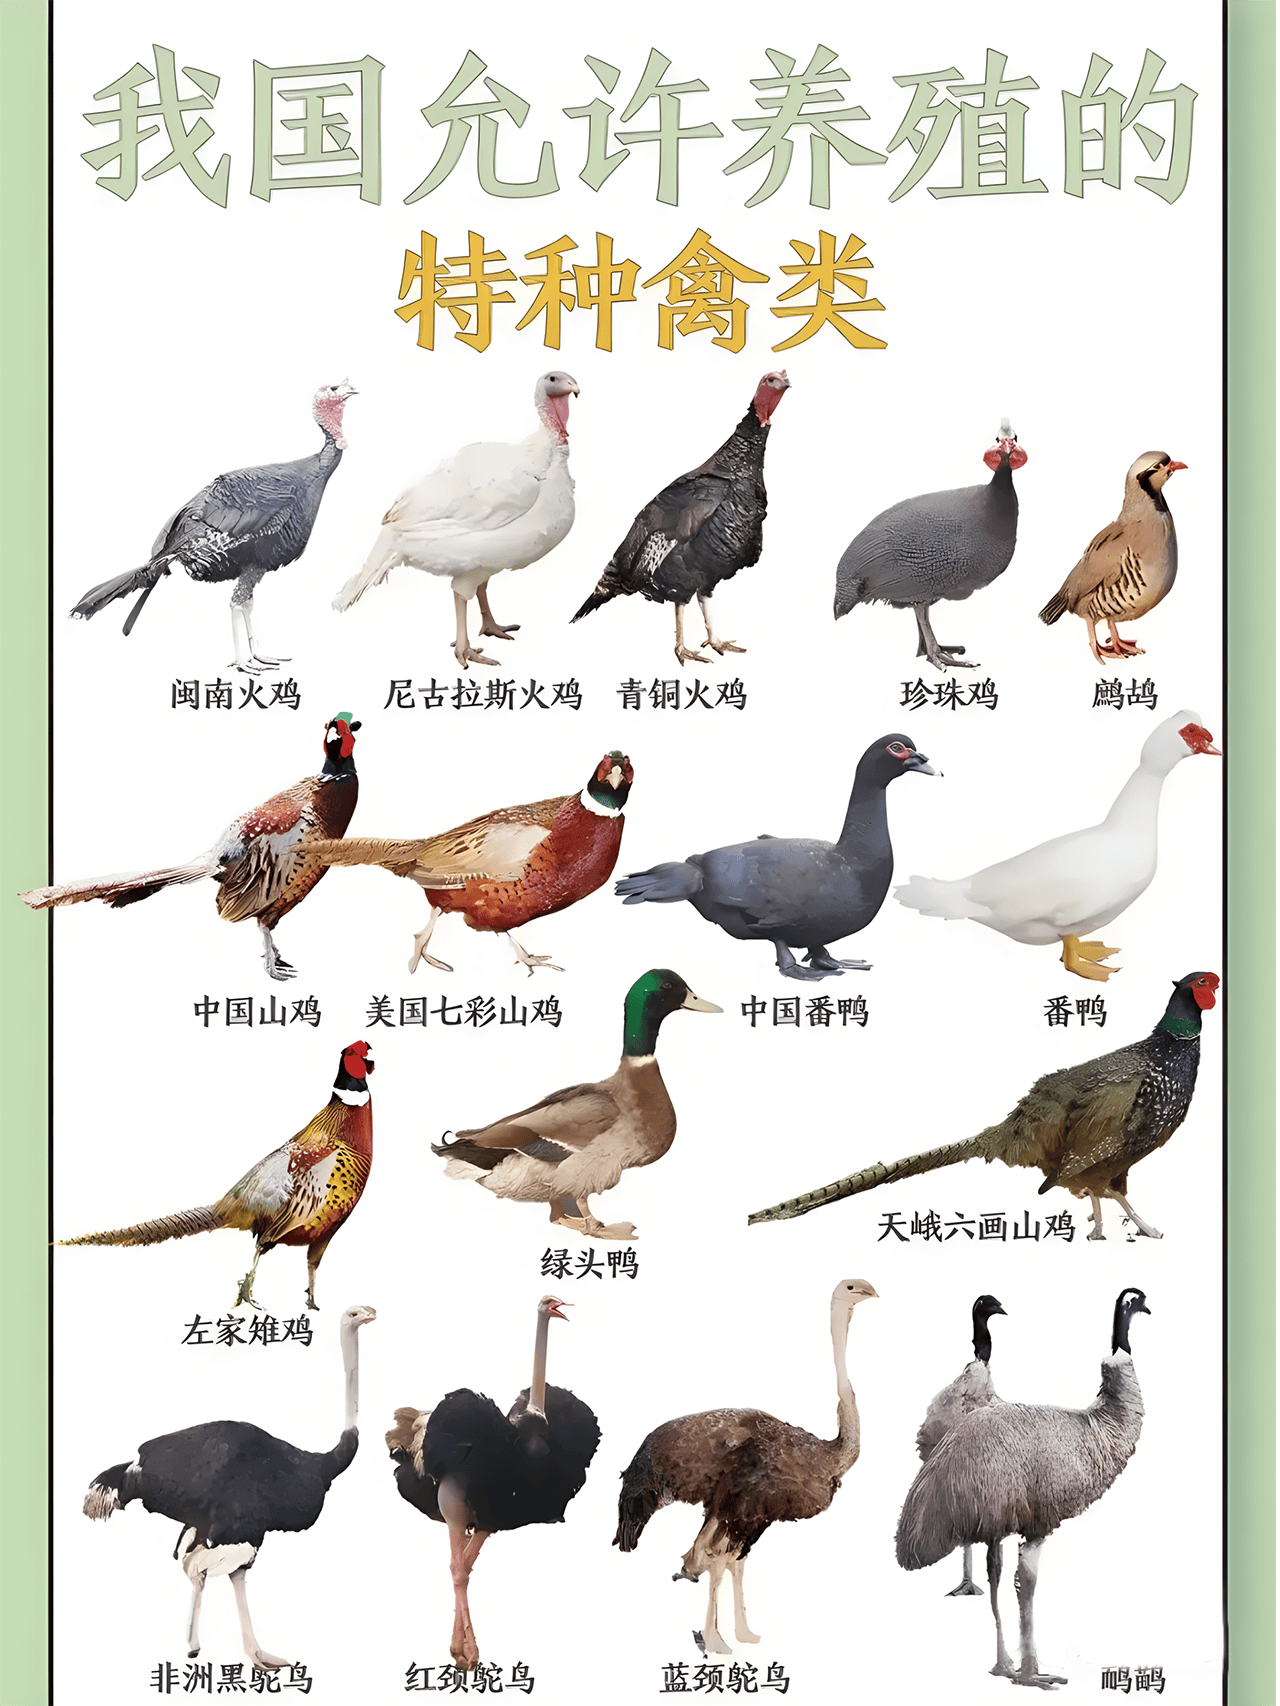 如下图8,绿头鸭培育品种,引入品种如下图7,鹧鸪培育品种,引入品种